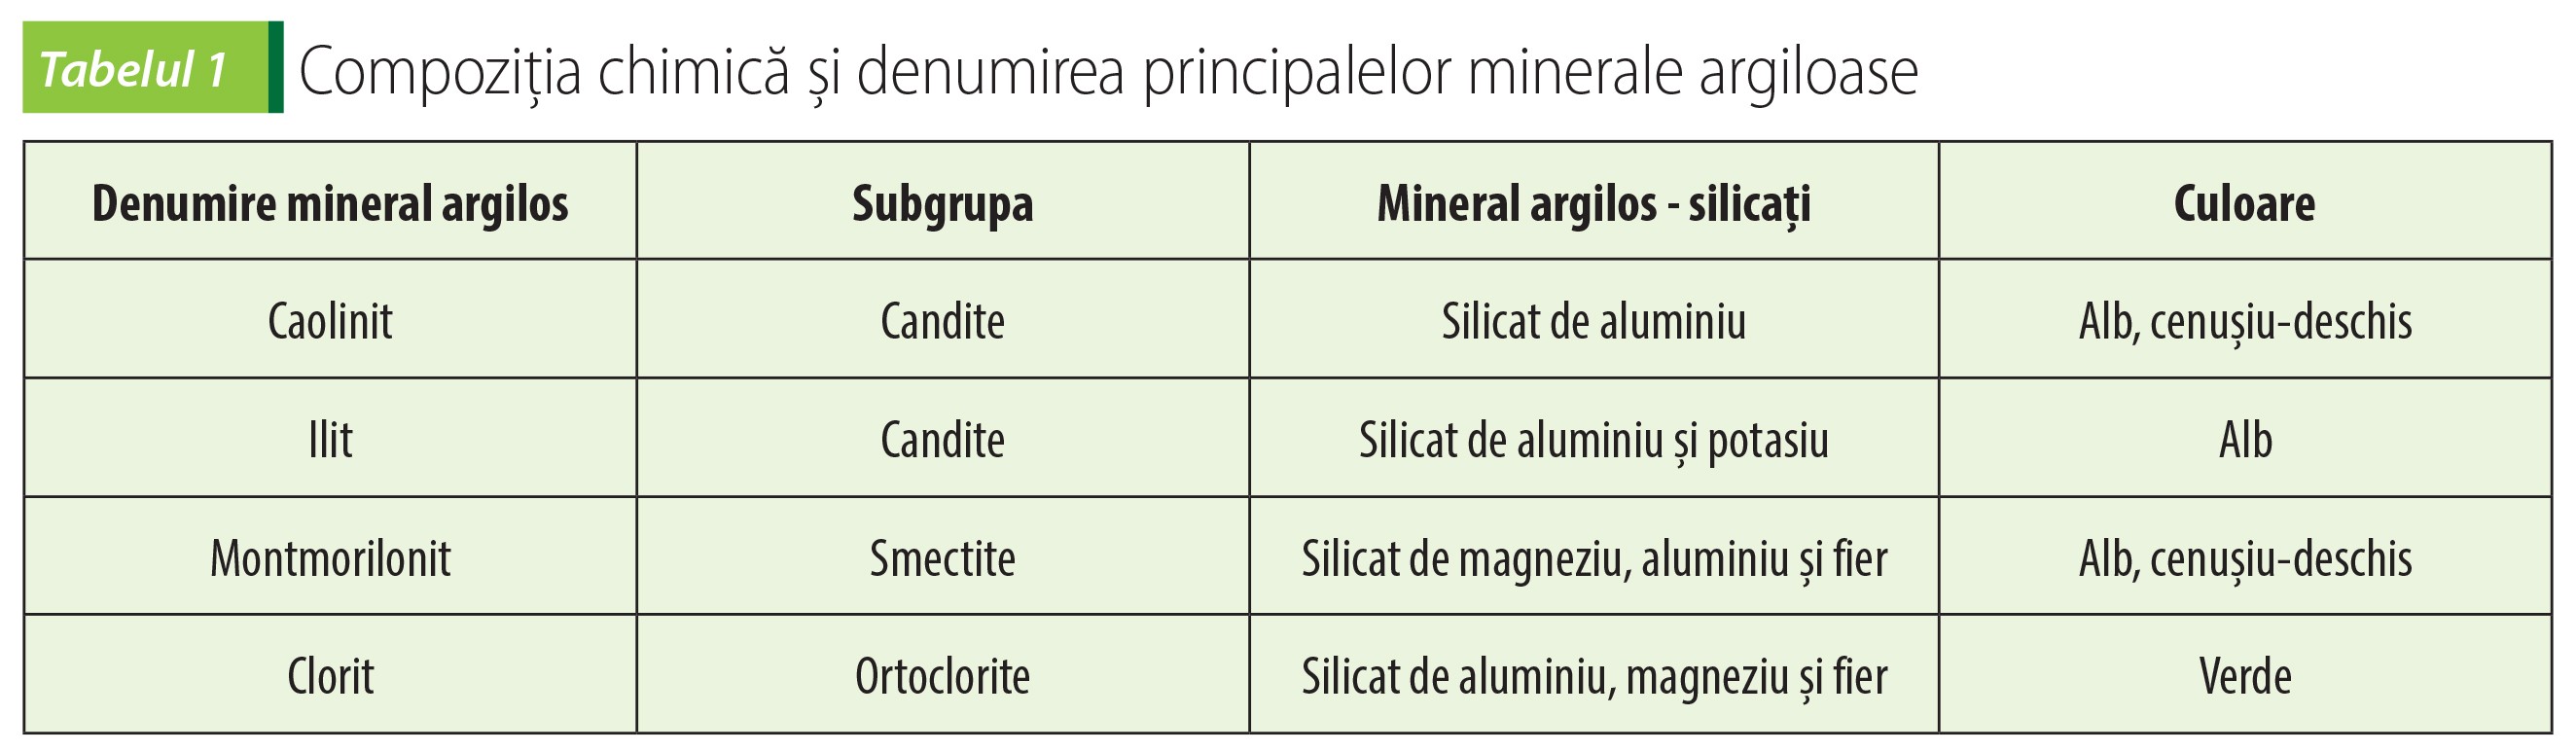 Tabelul 1 Compoziția chimică și denumirea principalelor minerale argiloase